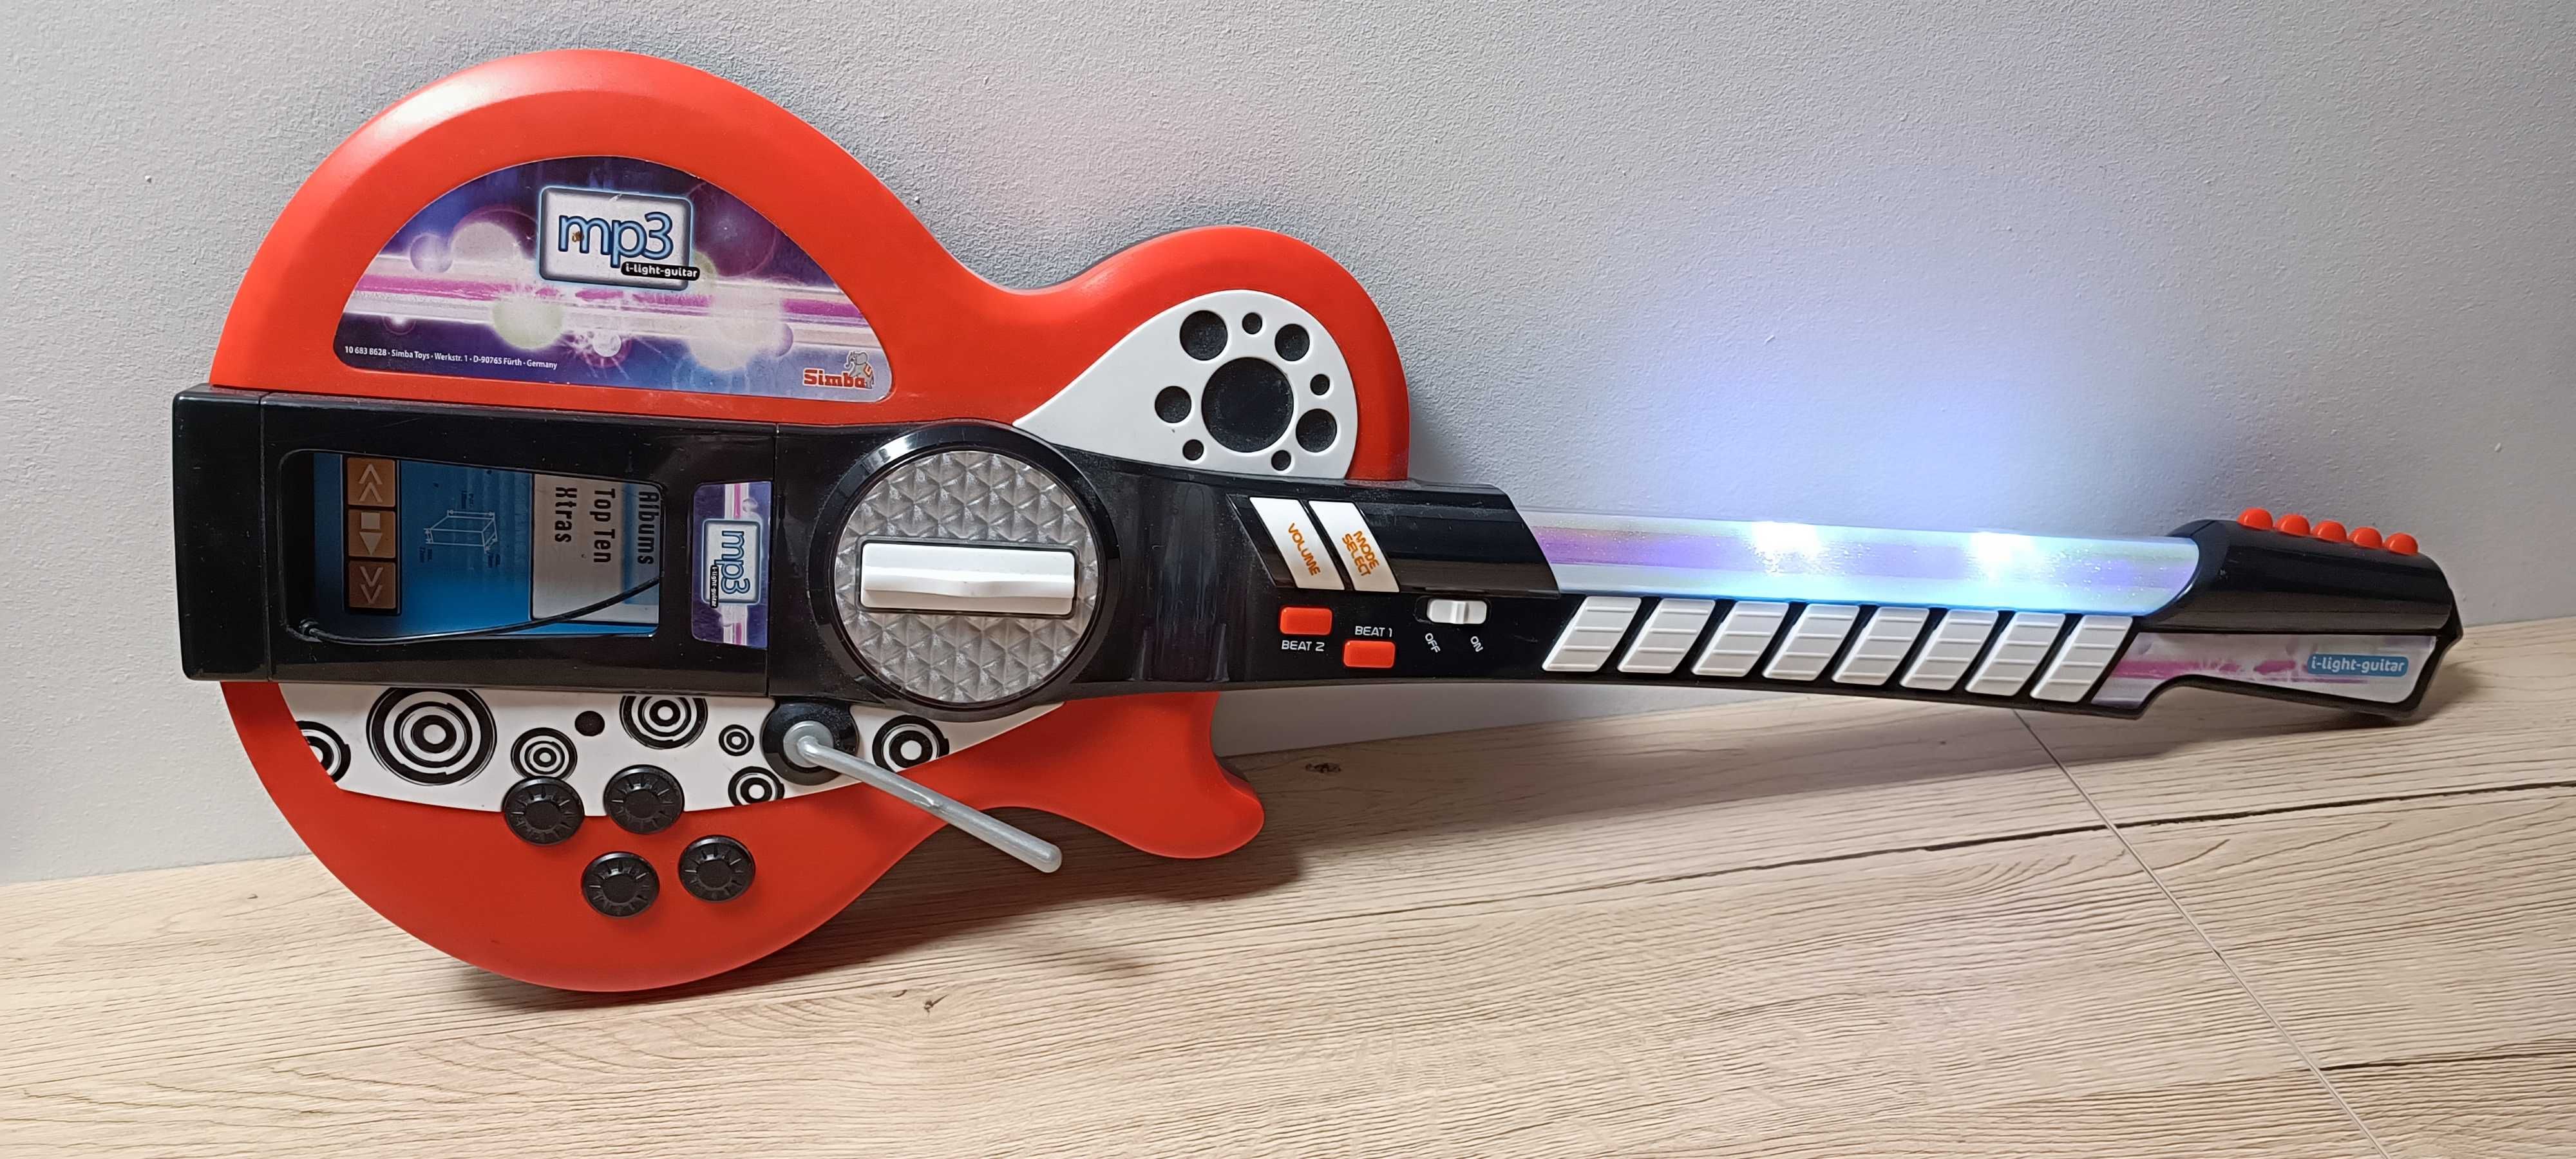 Gitara disco zabawka Simba mp3 efekty świetlne